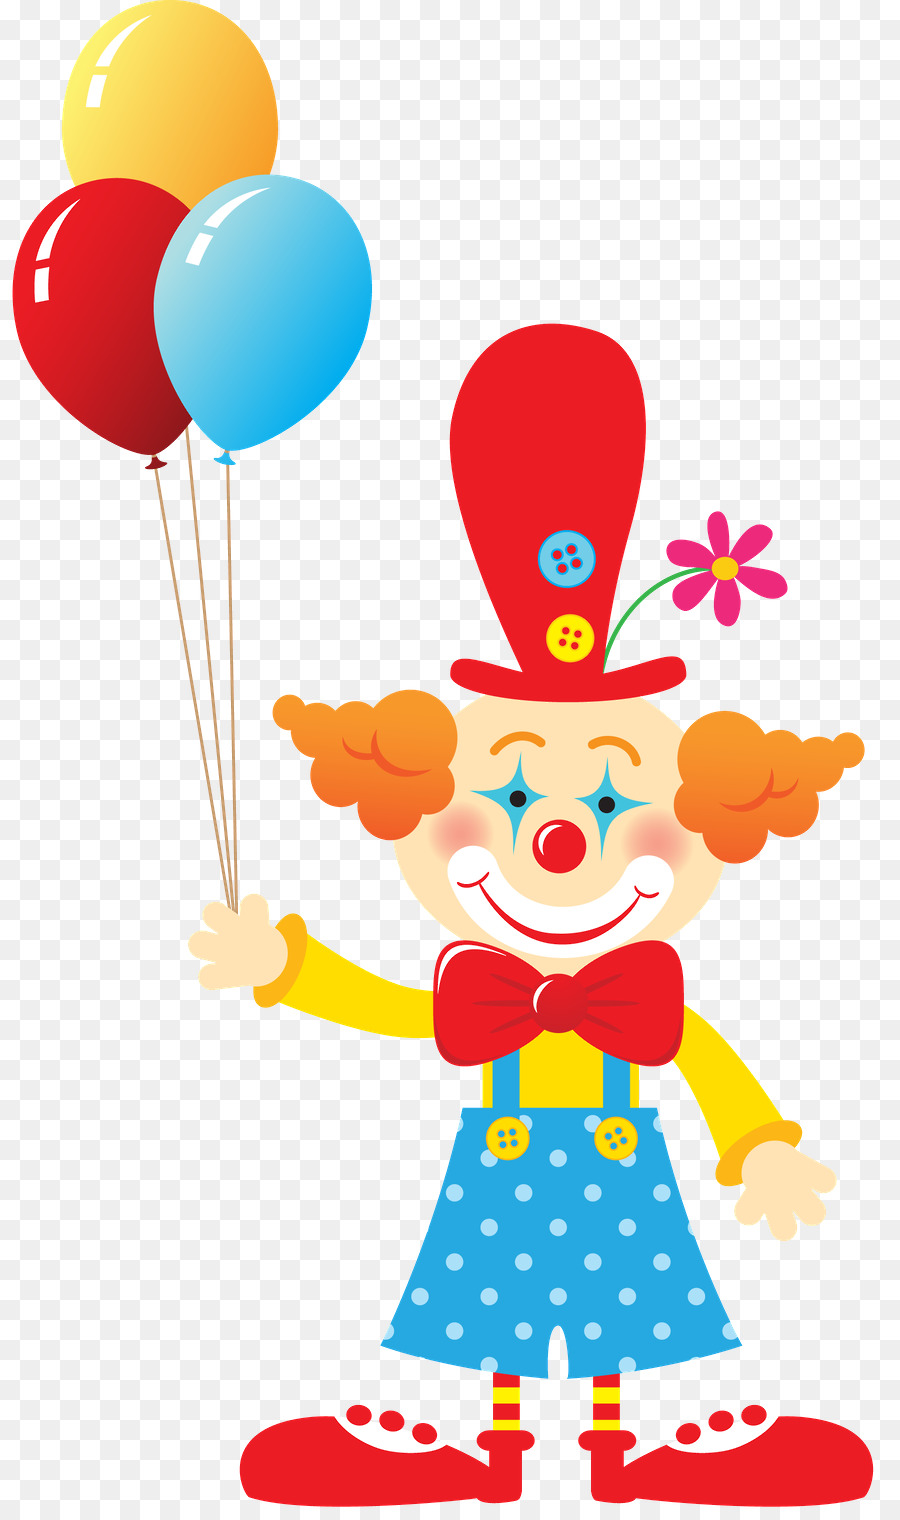 clown clipart balloon